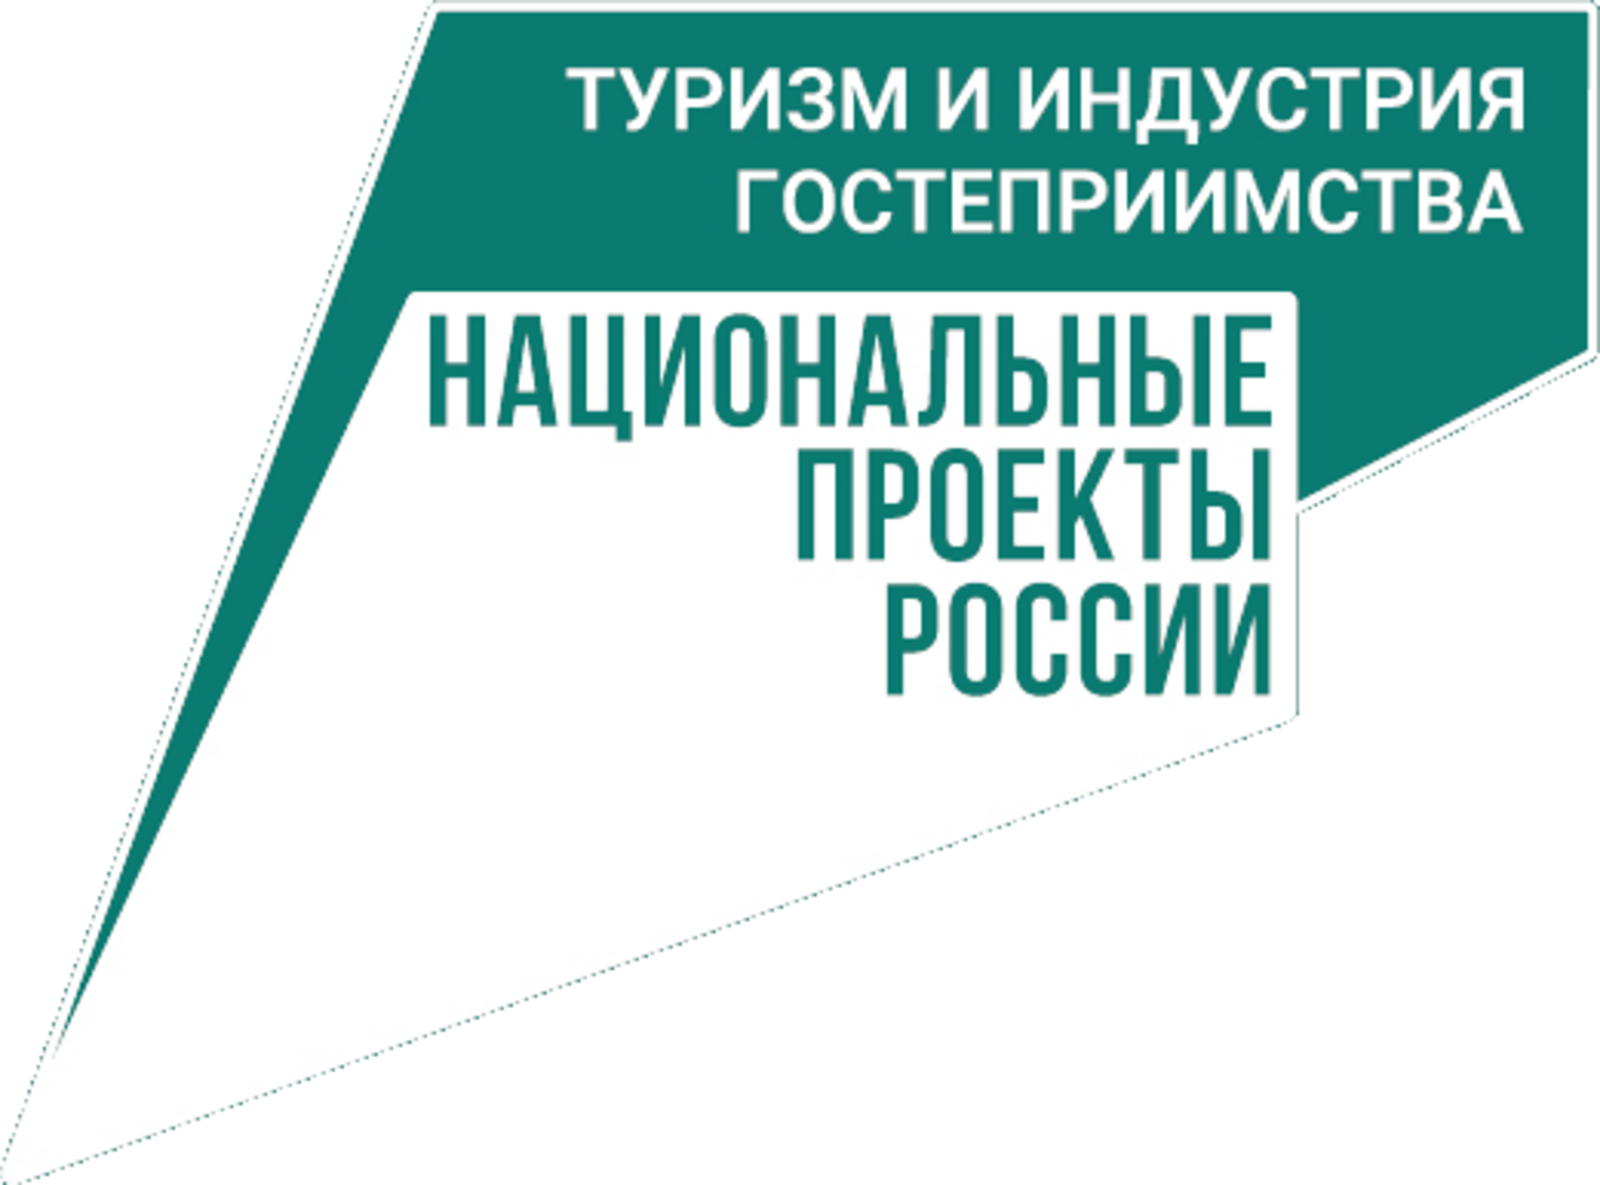 Уфа получит господдержку на обустройство туристического центра